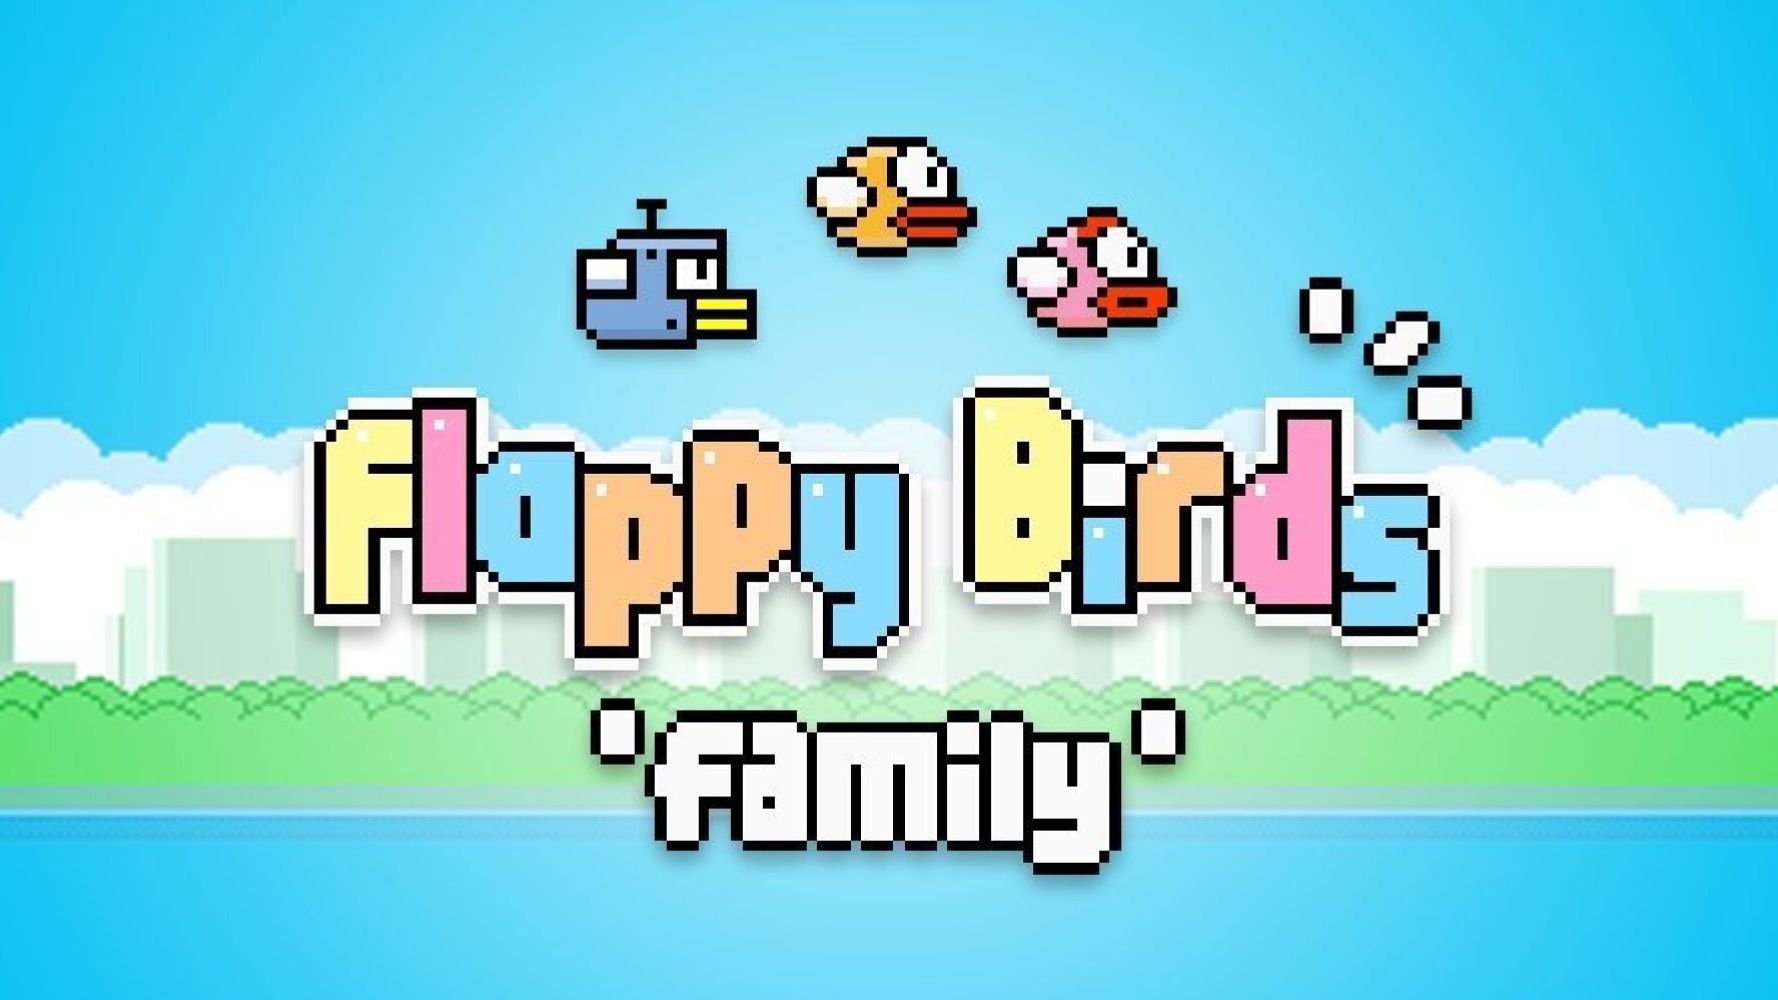 Flappy Bird – Signals